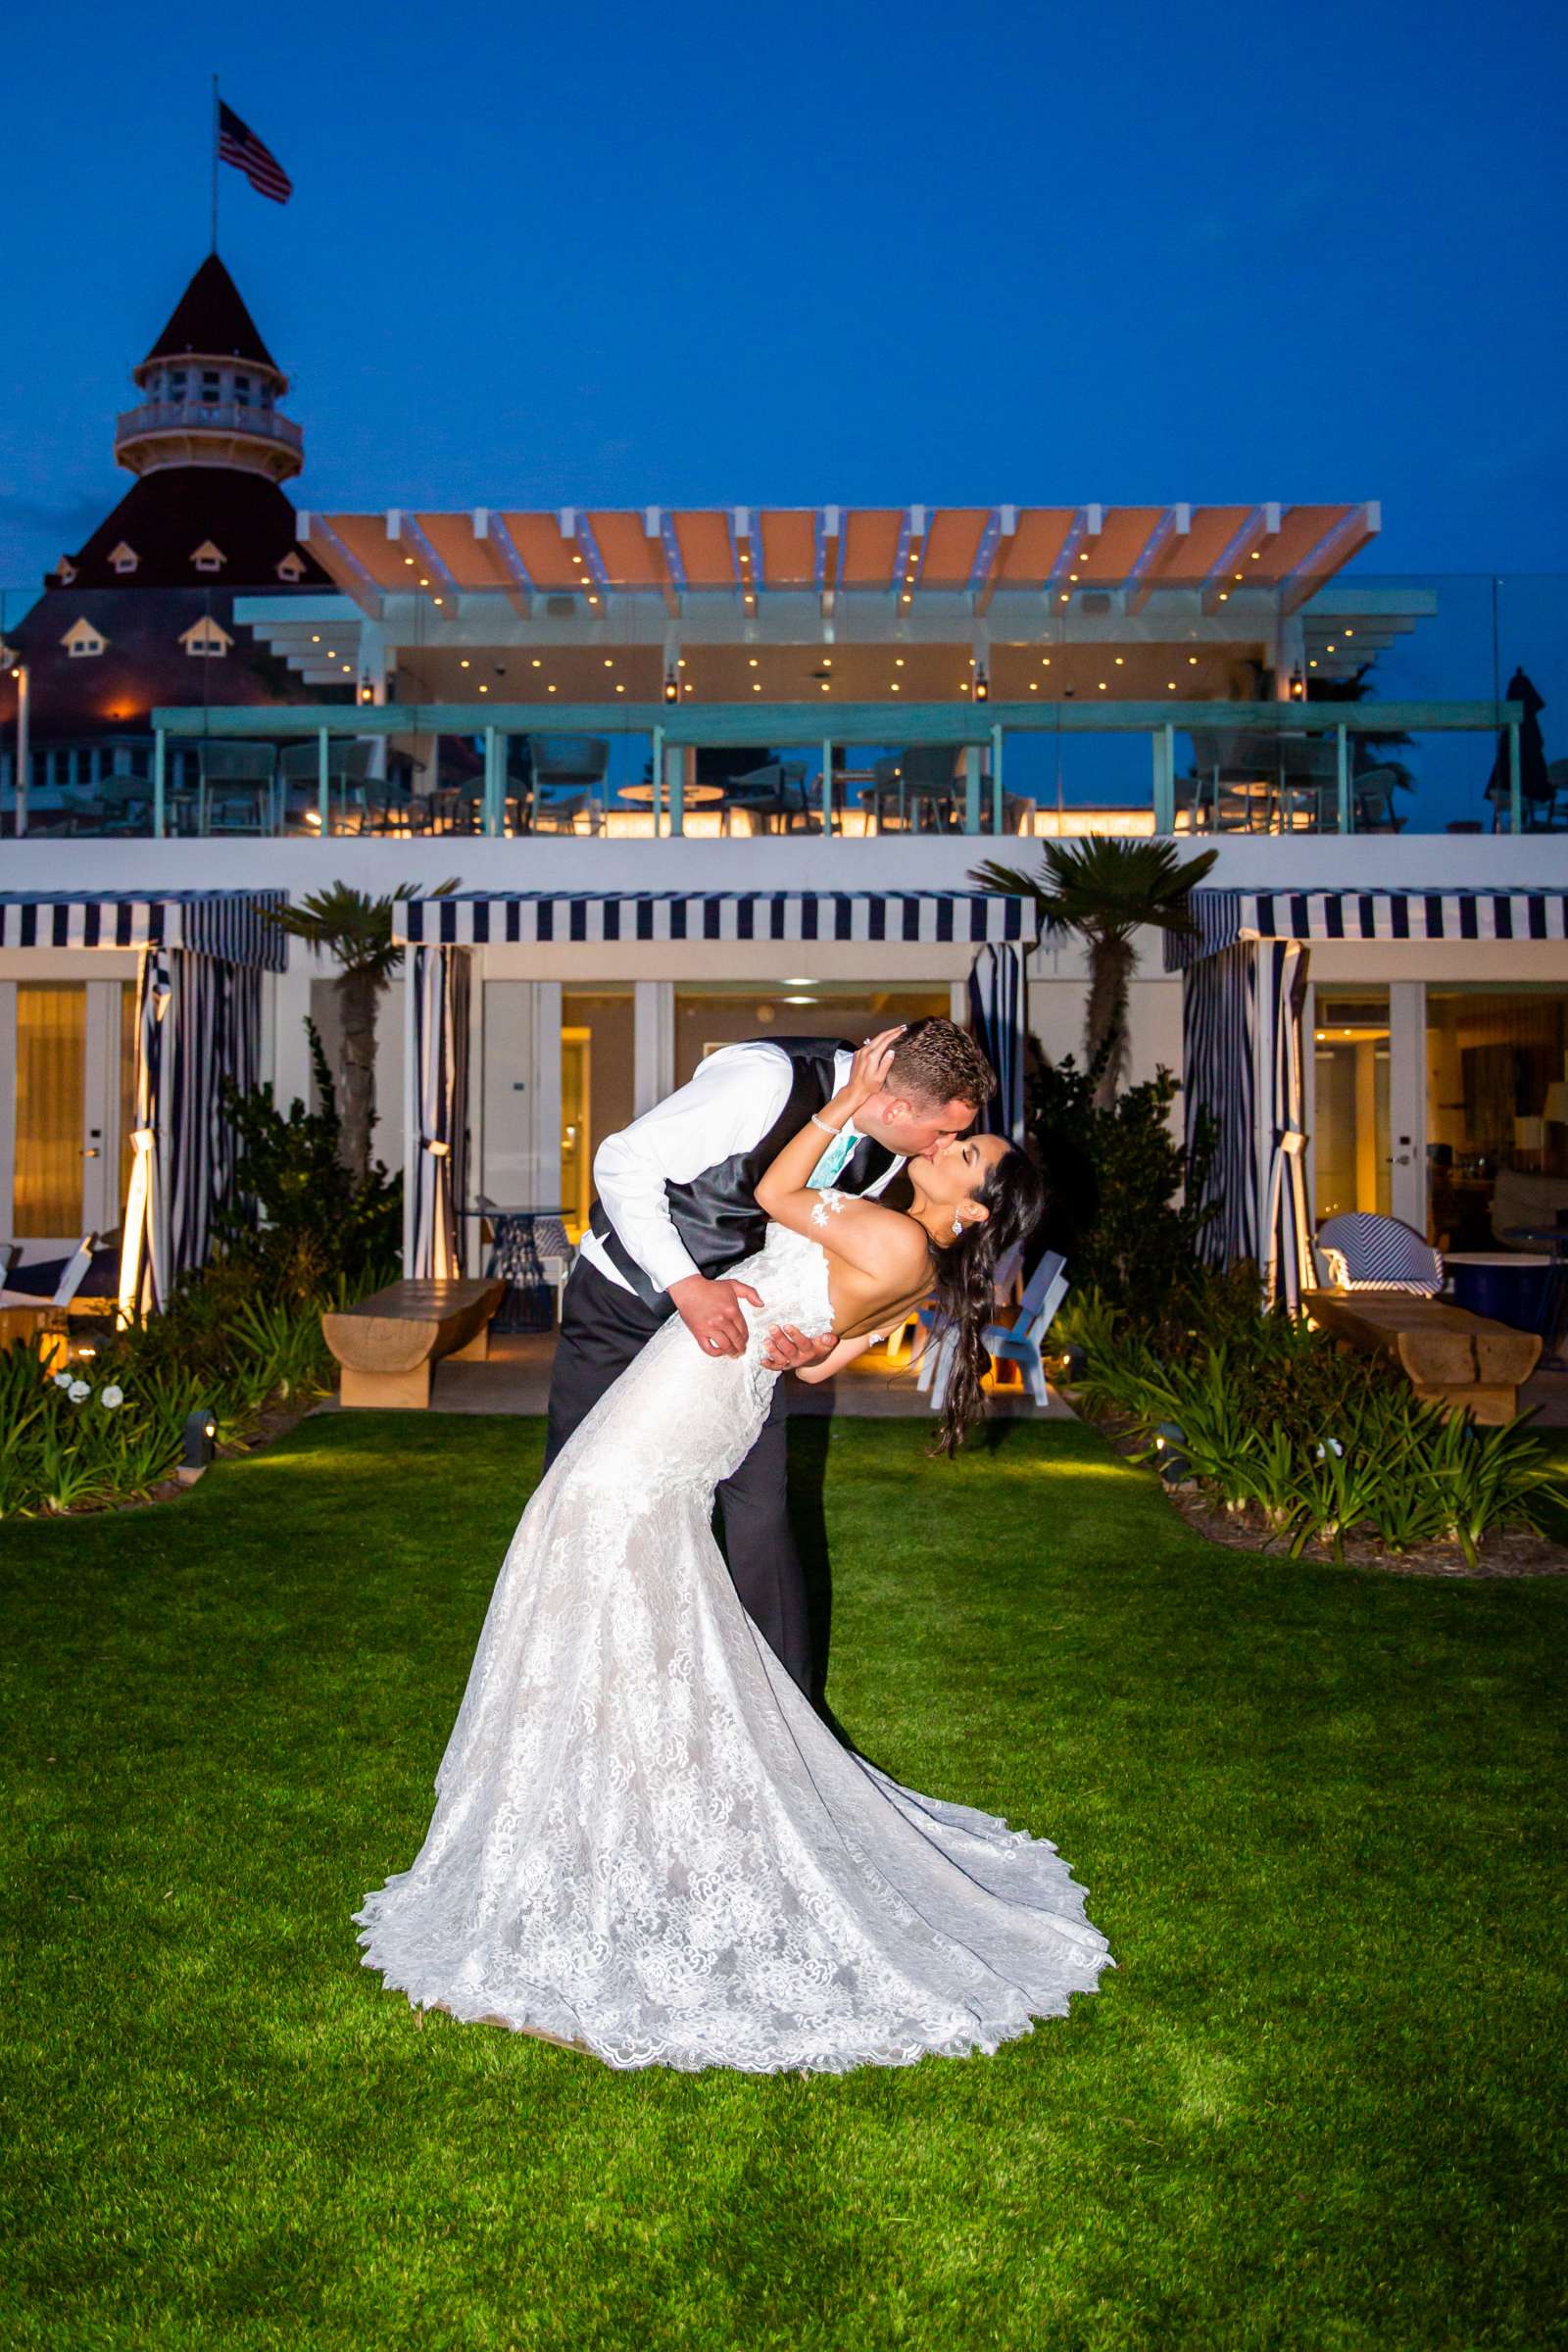 Hotel Del Coronado Wedding, Sarah and Kyle Wedding Photo #23 by True Photography